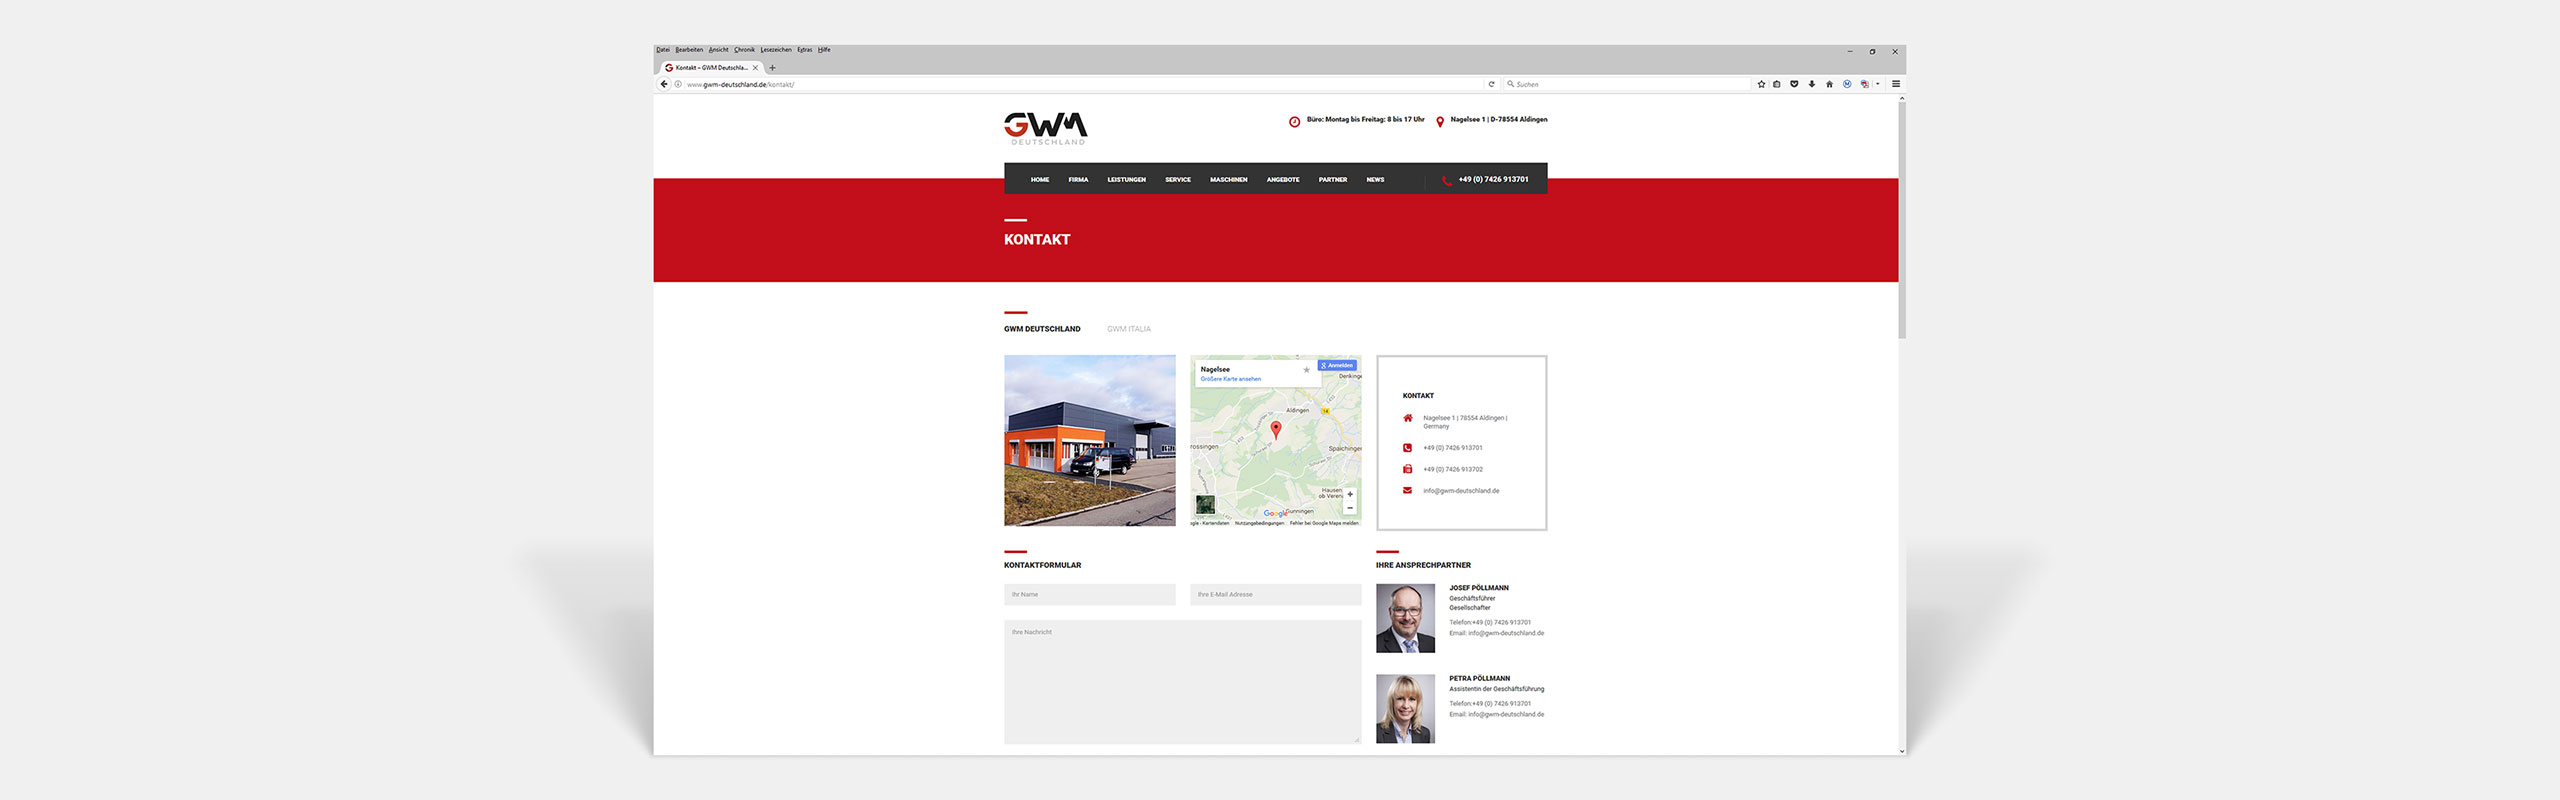 GWM Deutschland GmbH Responsive Website Kontakt by Hirschburg Werbeagentur